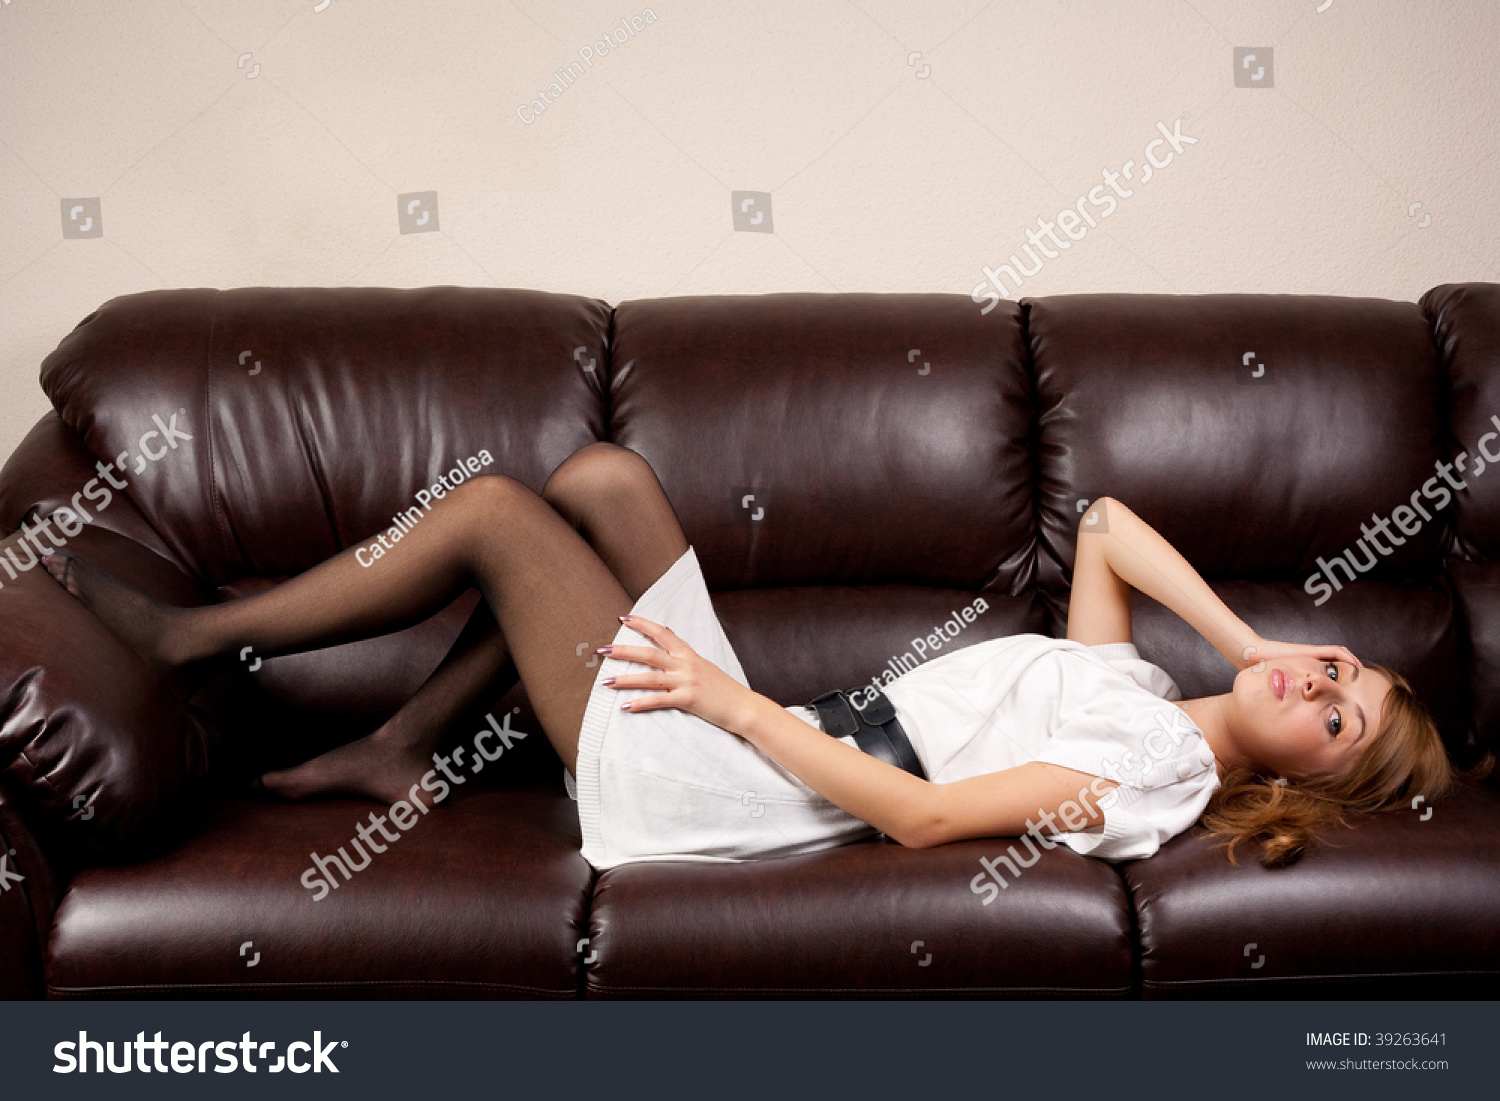 Грудастая бизнес леди в домашней обстановке сосёт член и долбится на кожаном диване